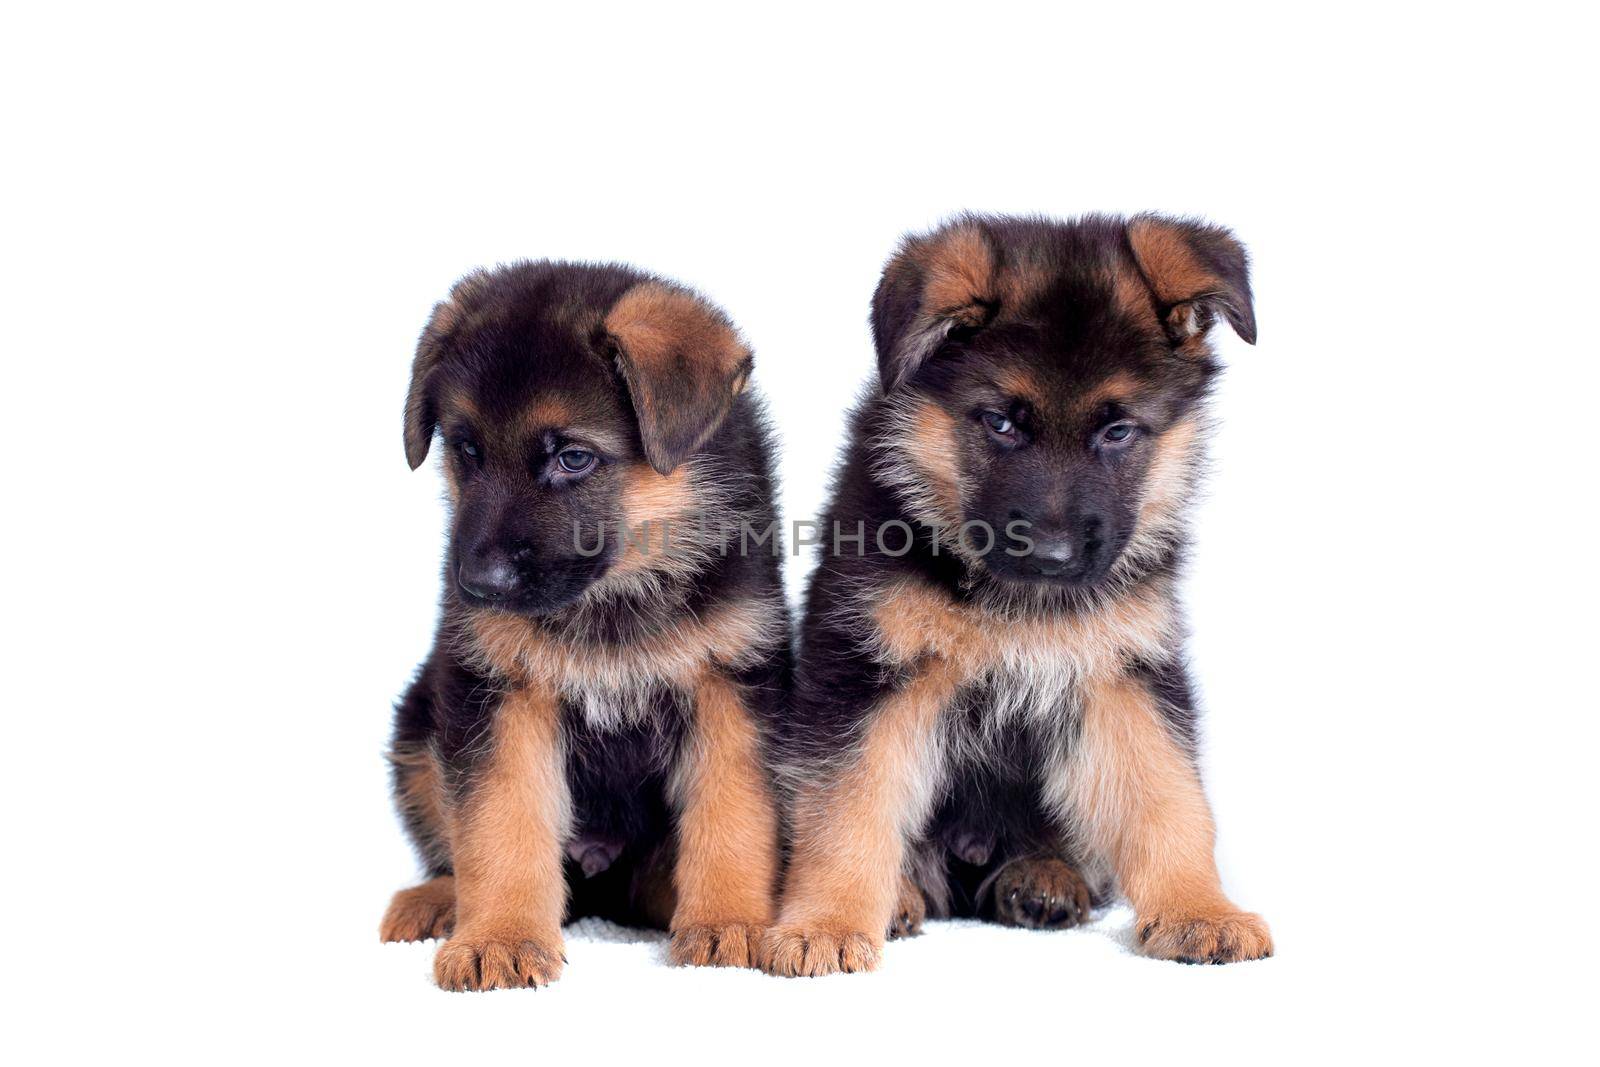 Two German shepherd puppies by RosaJay